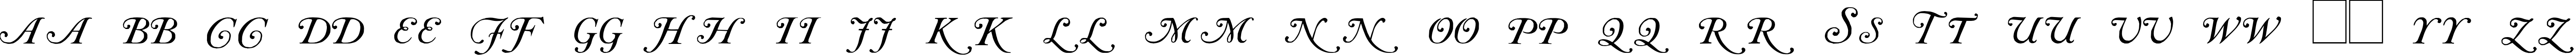 Пример написания английского алфавита шрифтом Caslon Initials